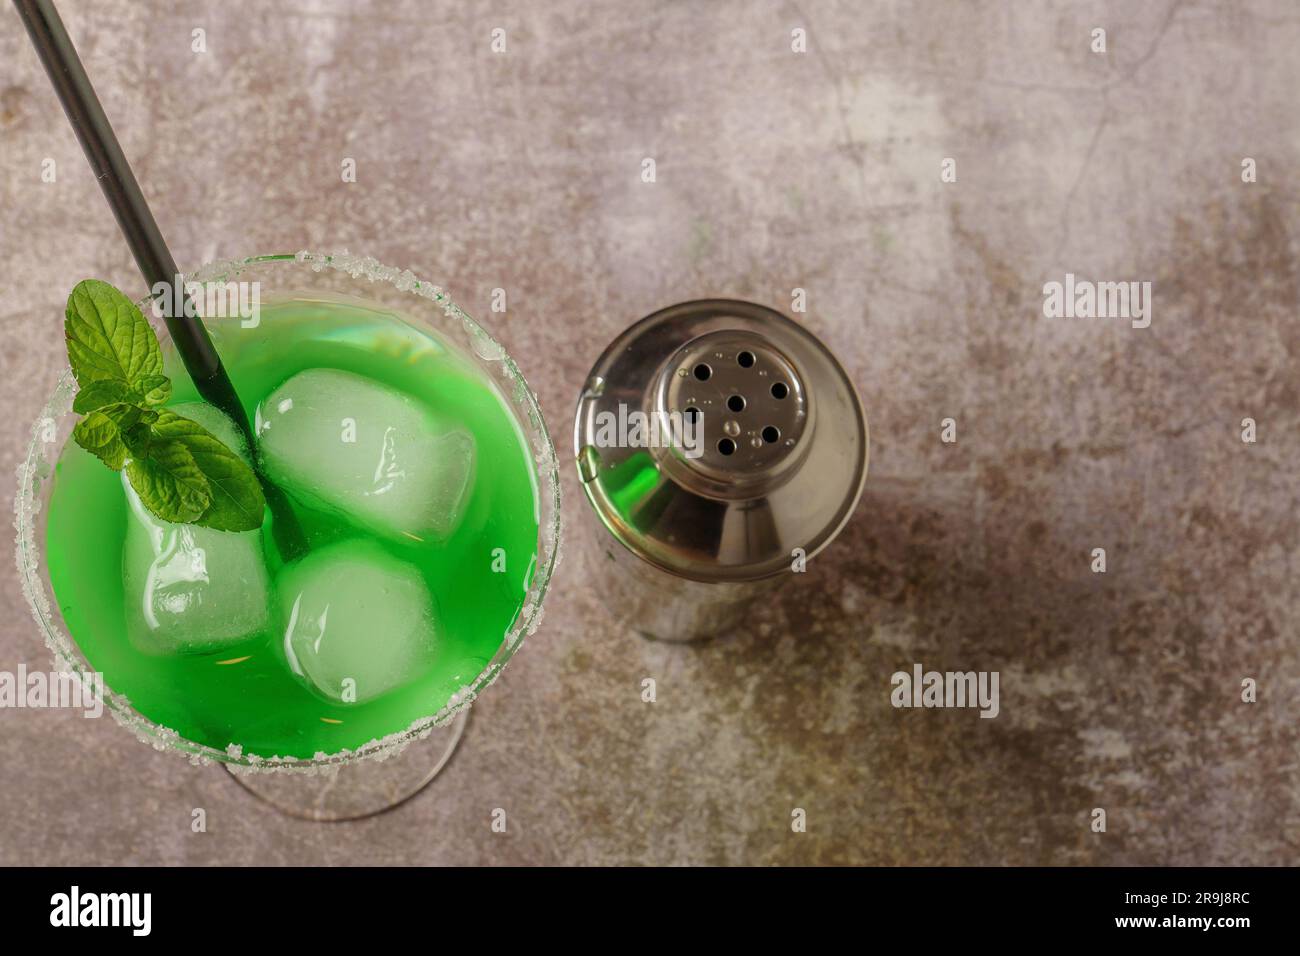 vista dall'alto di un cocktail verde con ghiaccio alla menta e paglia i bordi del bicchiere hanno zucchero a velo e uno shaker per accompagnarlo Foto Stock